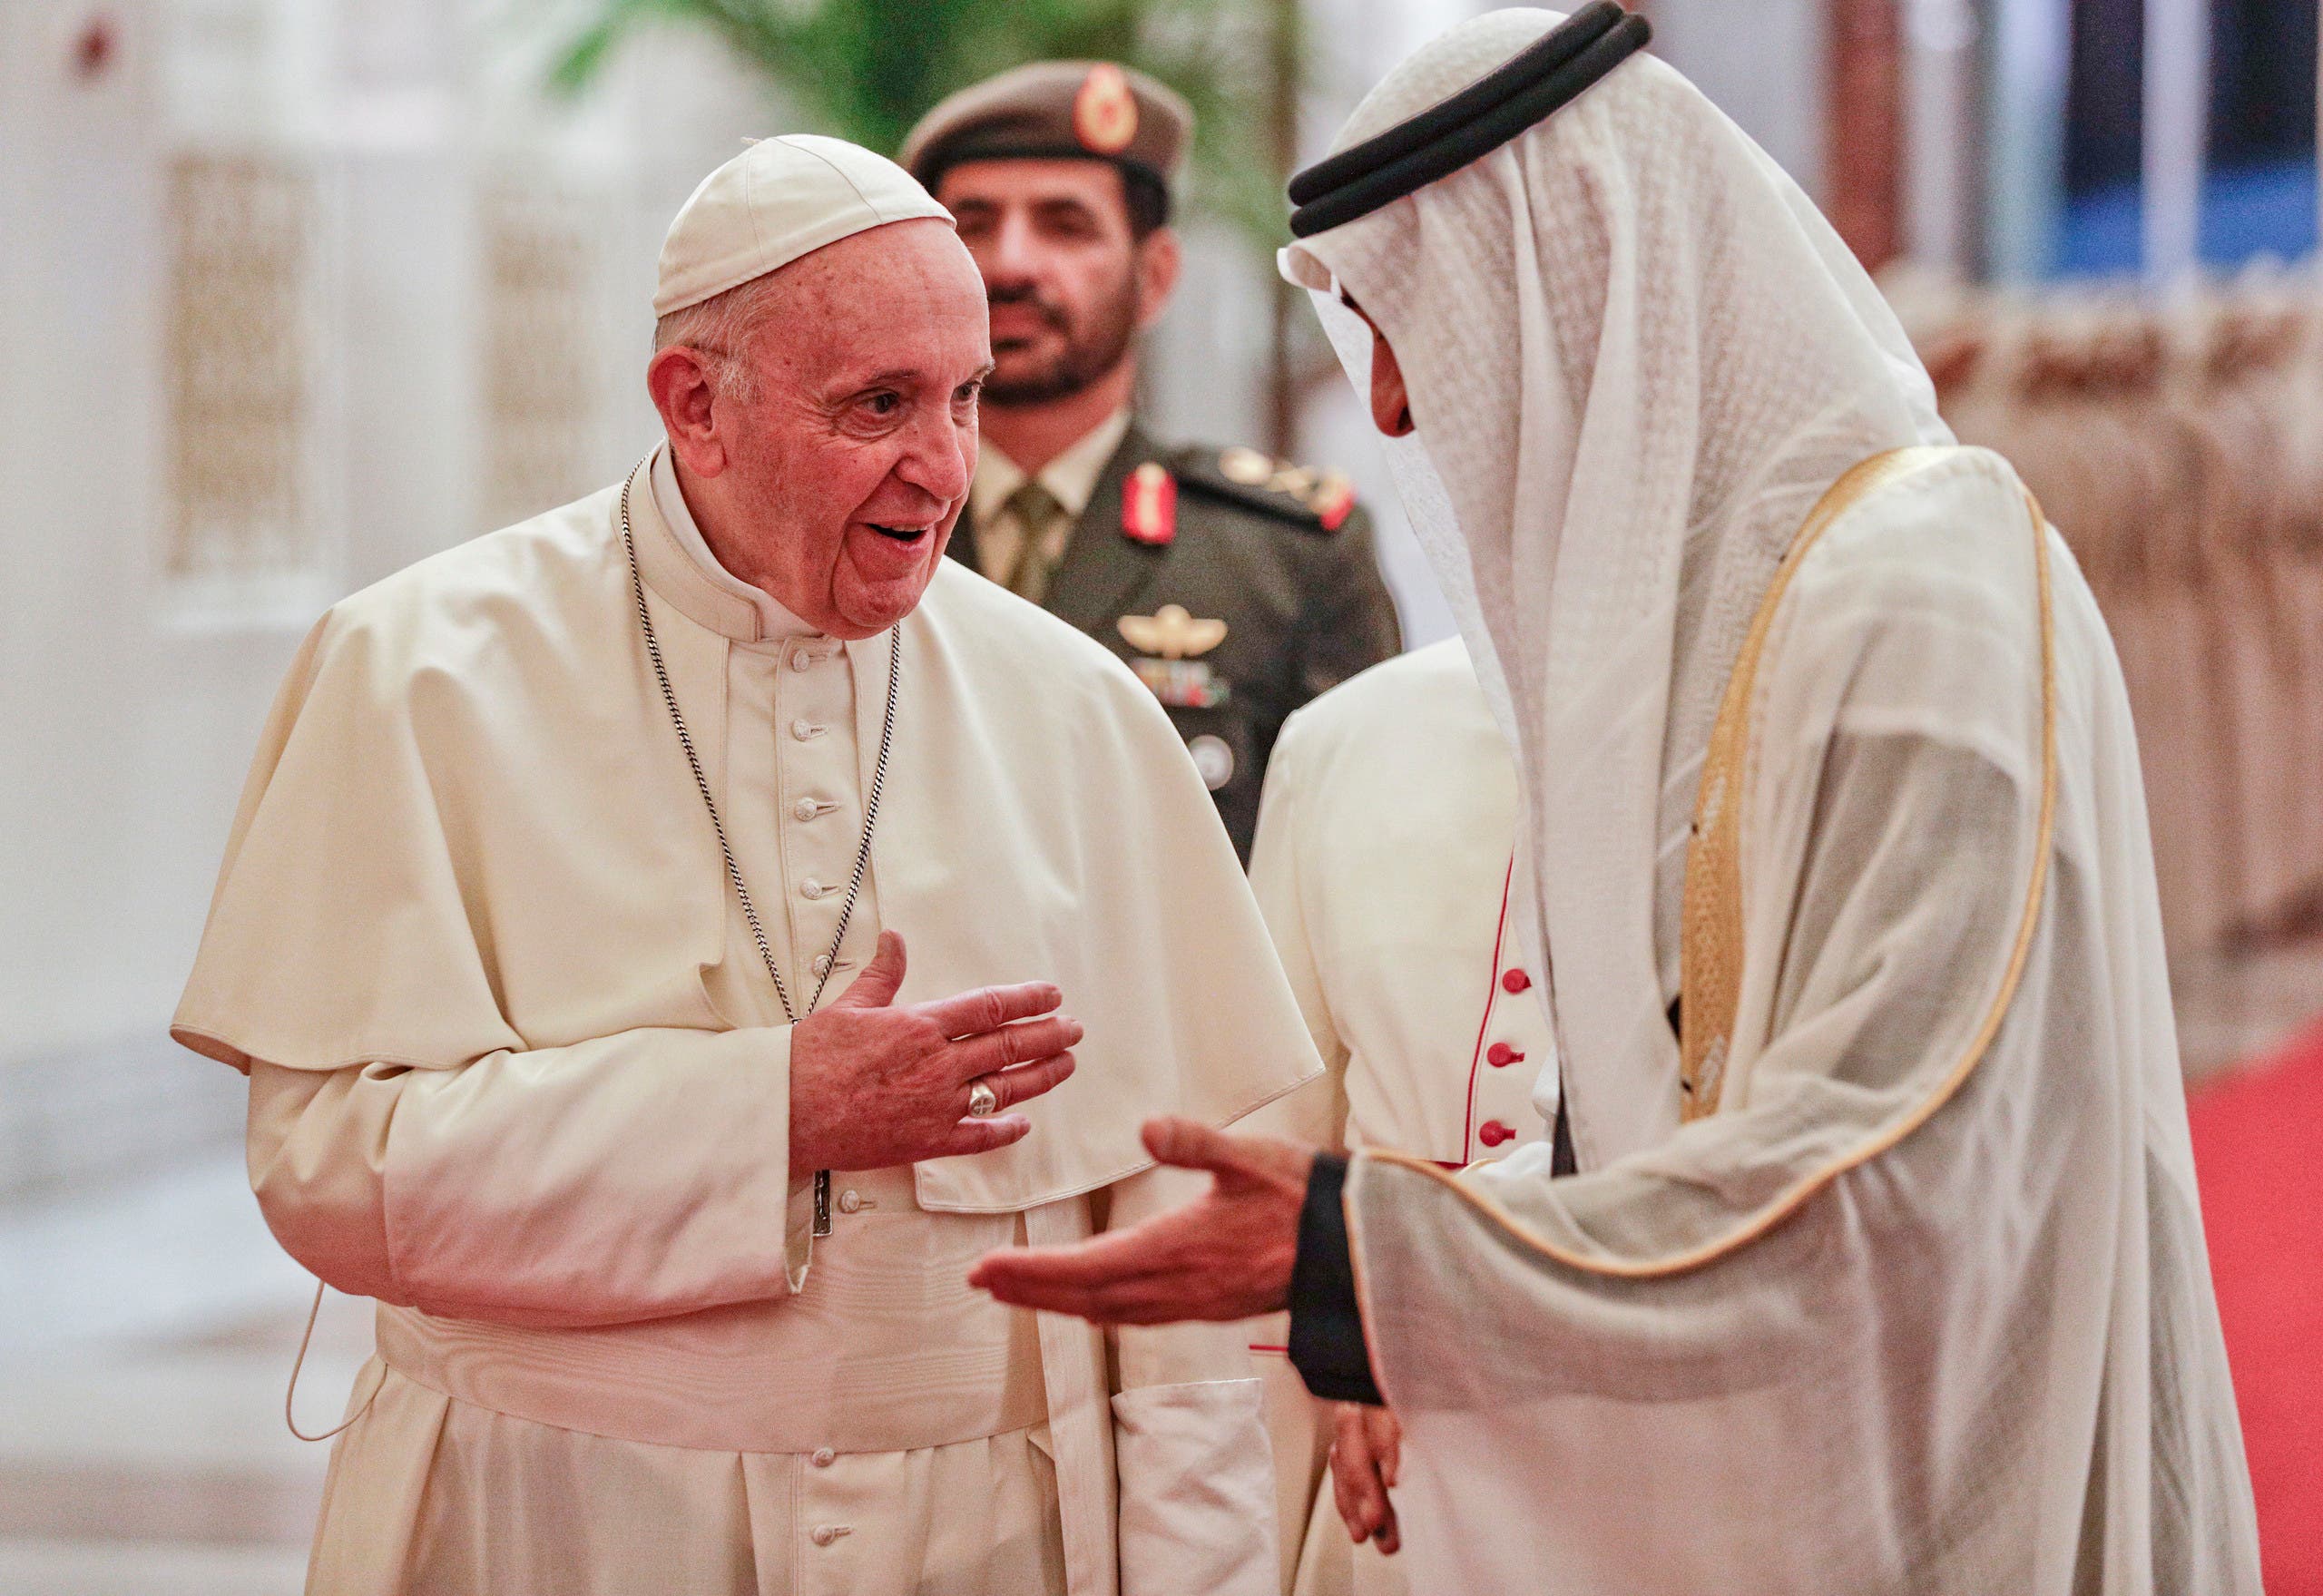 وصل البابا فرنسيس، بابا الفاتيكان، إلى الإمارات، ليل الأحد، في زيارة تاريخية للمنطقة 793247dc-97e7-4ff9-a1cf-b23f1ee60d9a